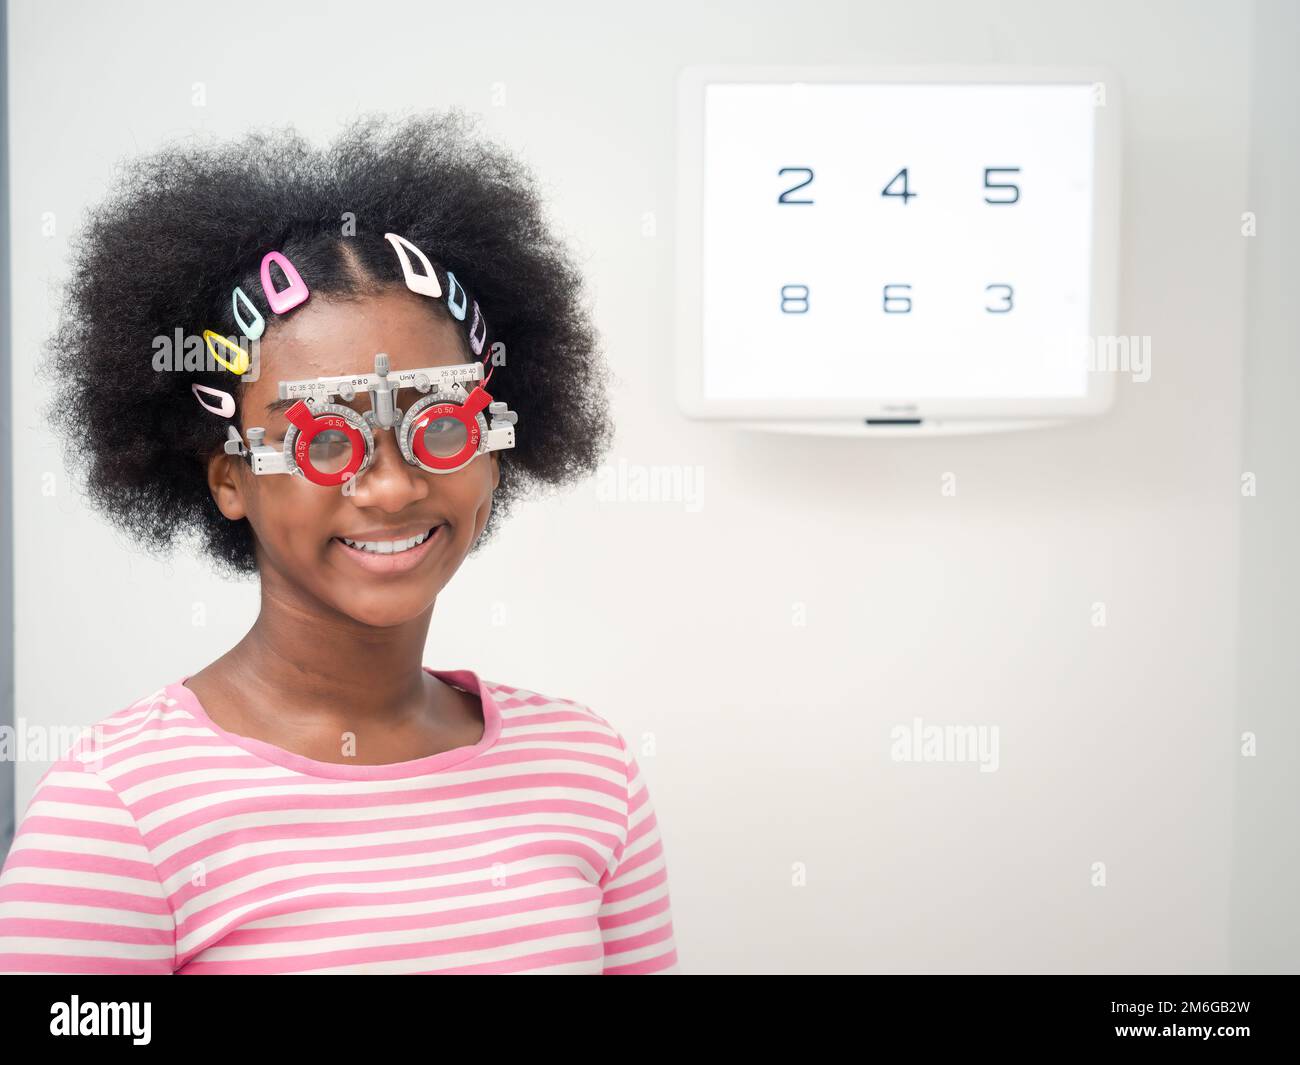 Afrikanisches Mädchen mit optischem Versuchsrahmen zur Bestimmung der Sehschärfe. Gesundheitsfürsorge, Medizin, Menschen, Sehvermögen und Technologiekonzept Stockfoto